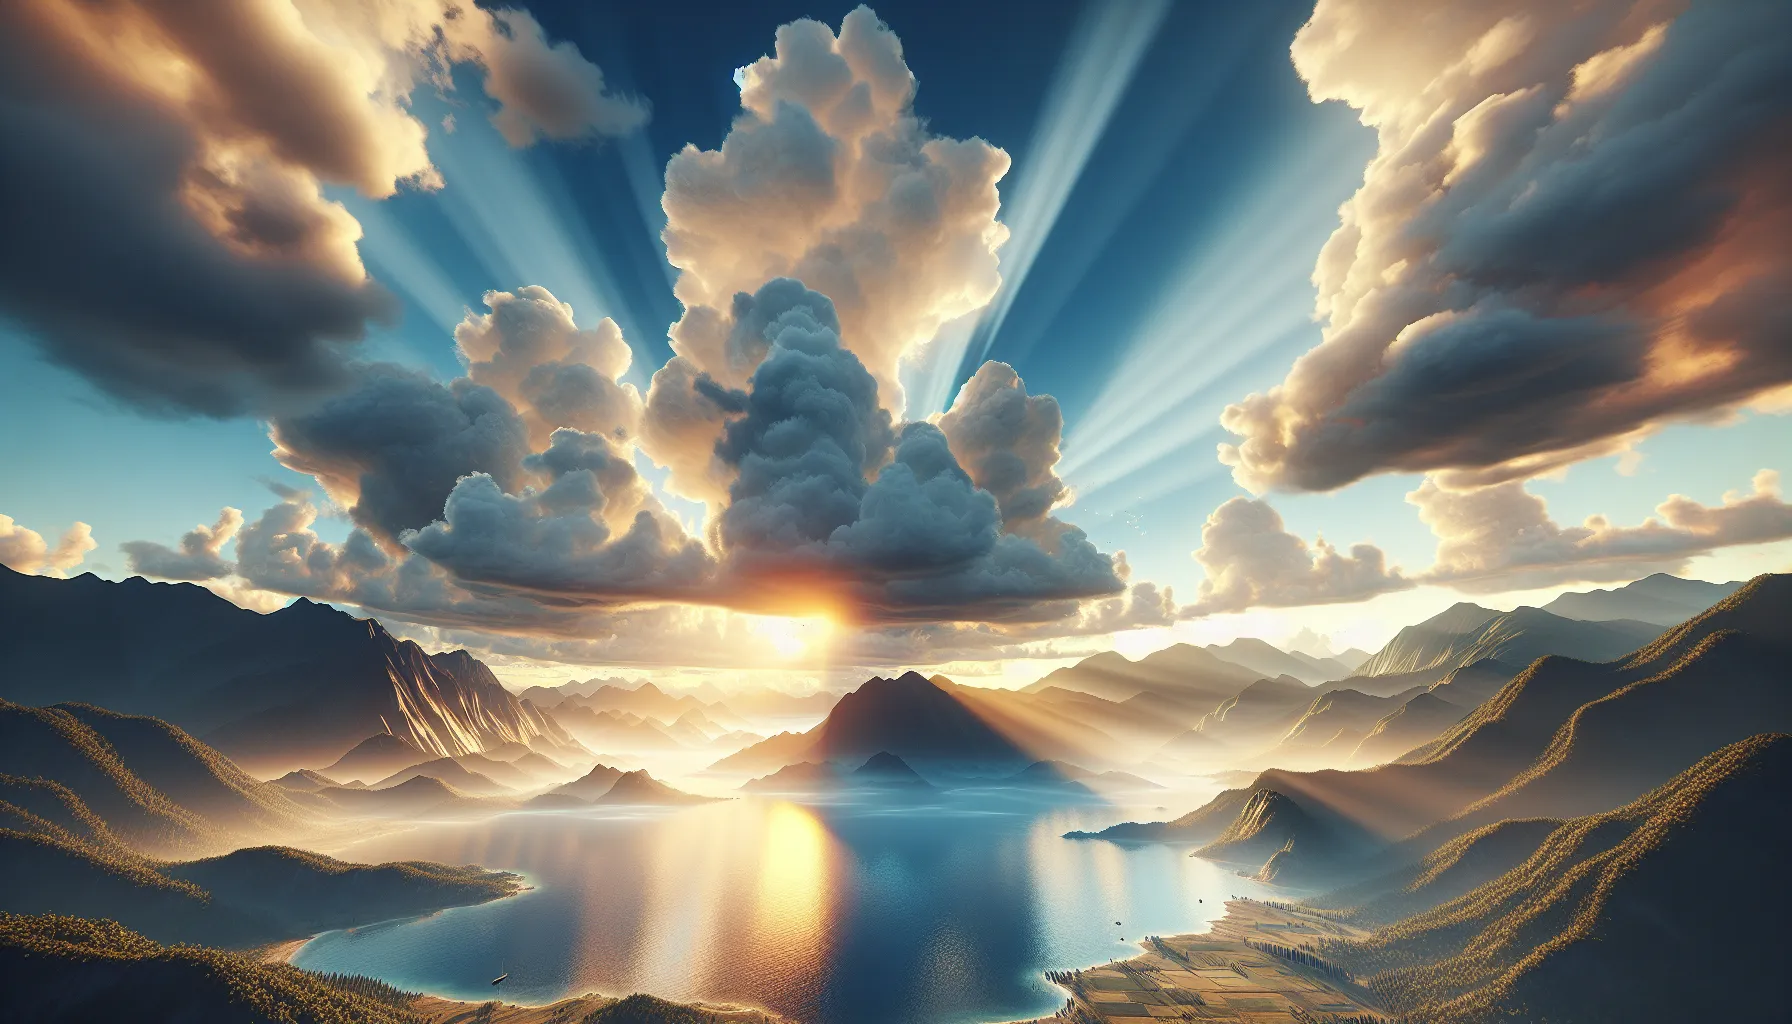 雲の合間から降り注ぐ太陽の光と、光に照らされる山々と湖